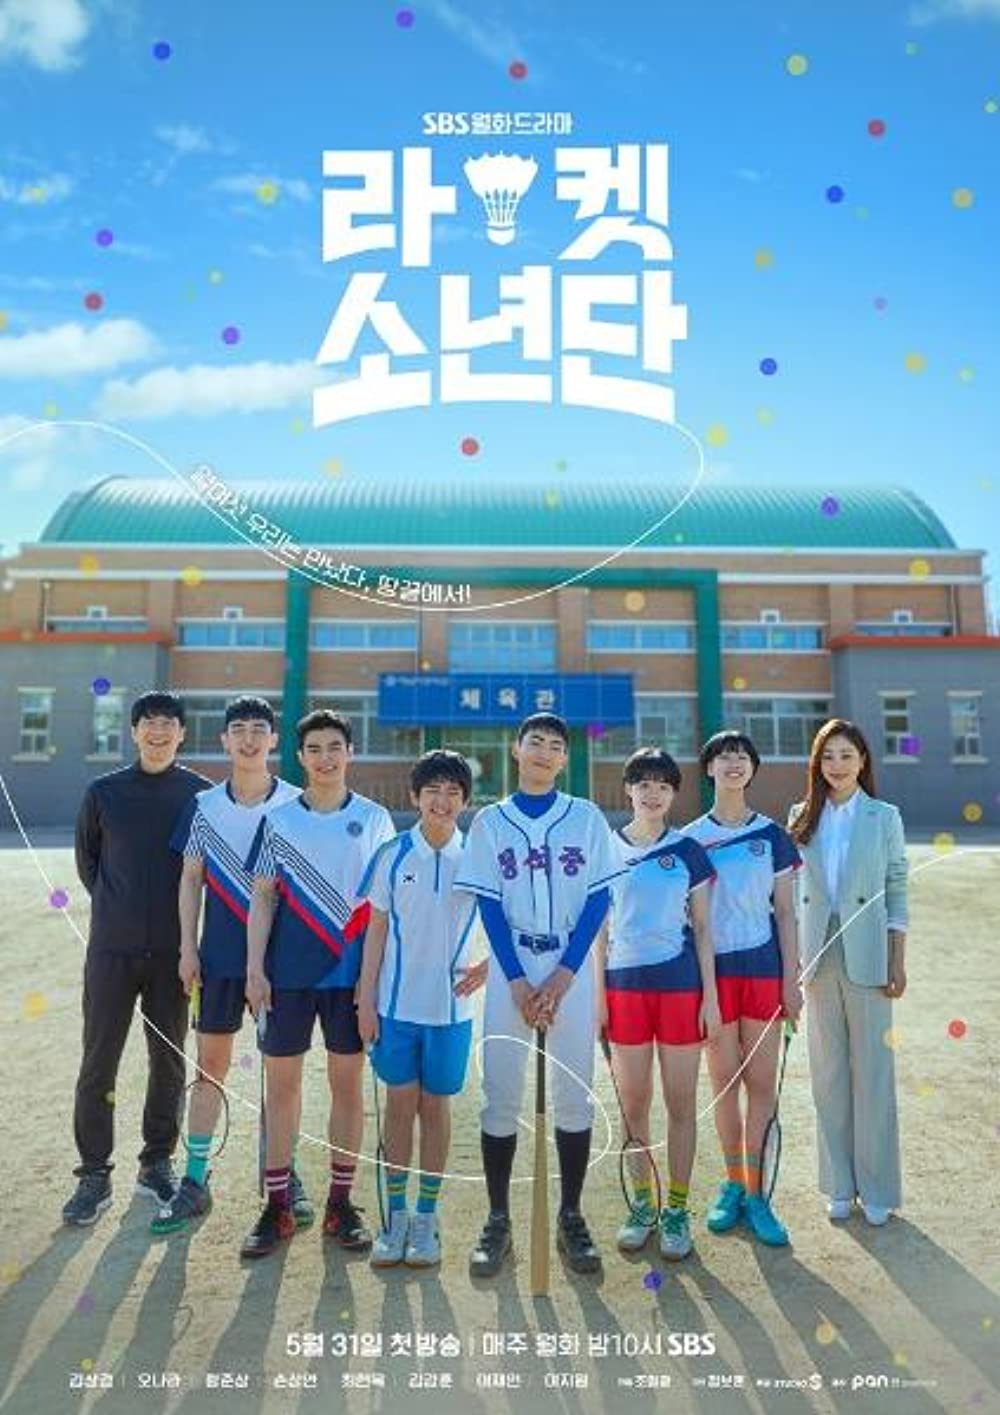 11 Drama Korea olahraga, terbaru Going To You At A Speed of 493 Km